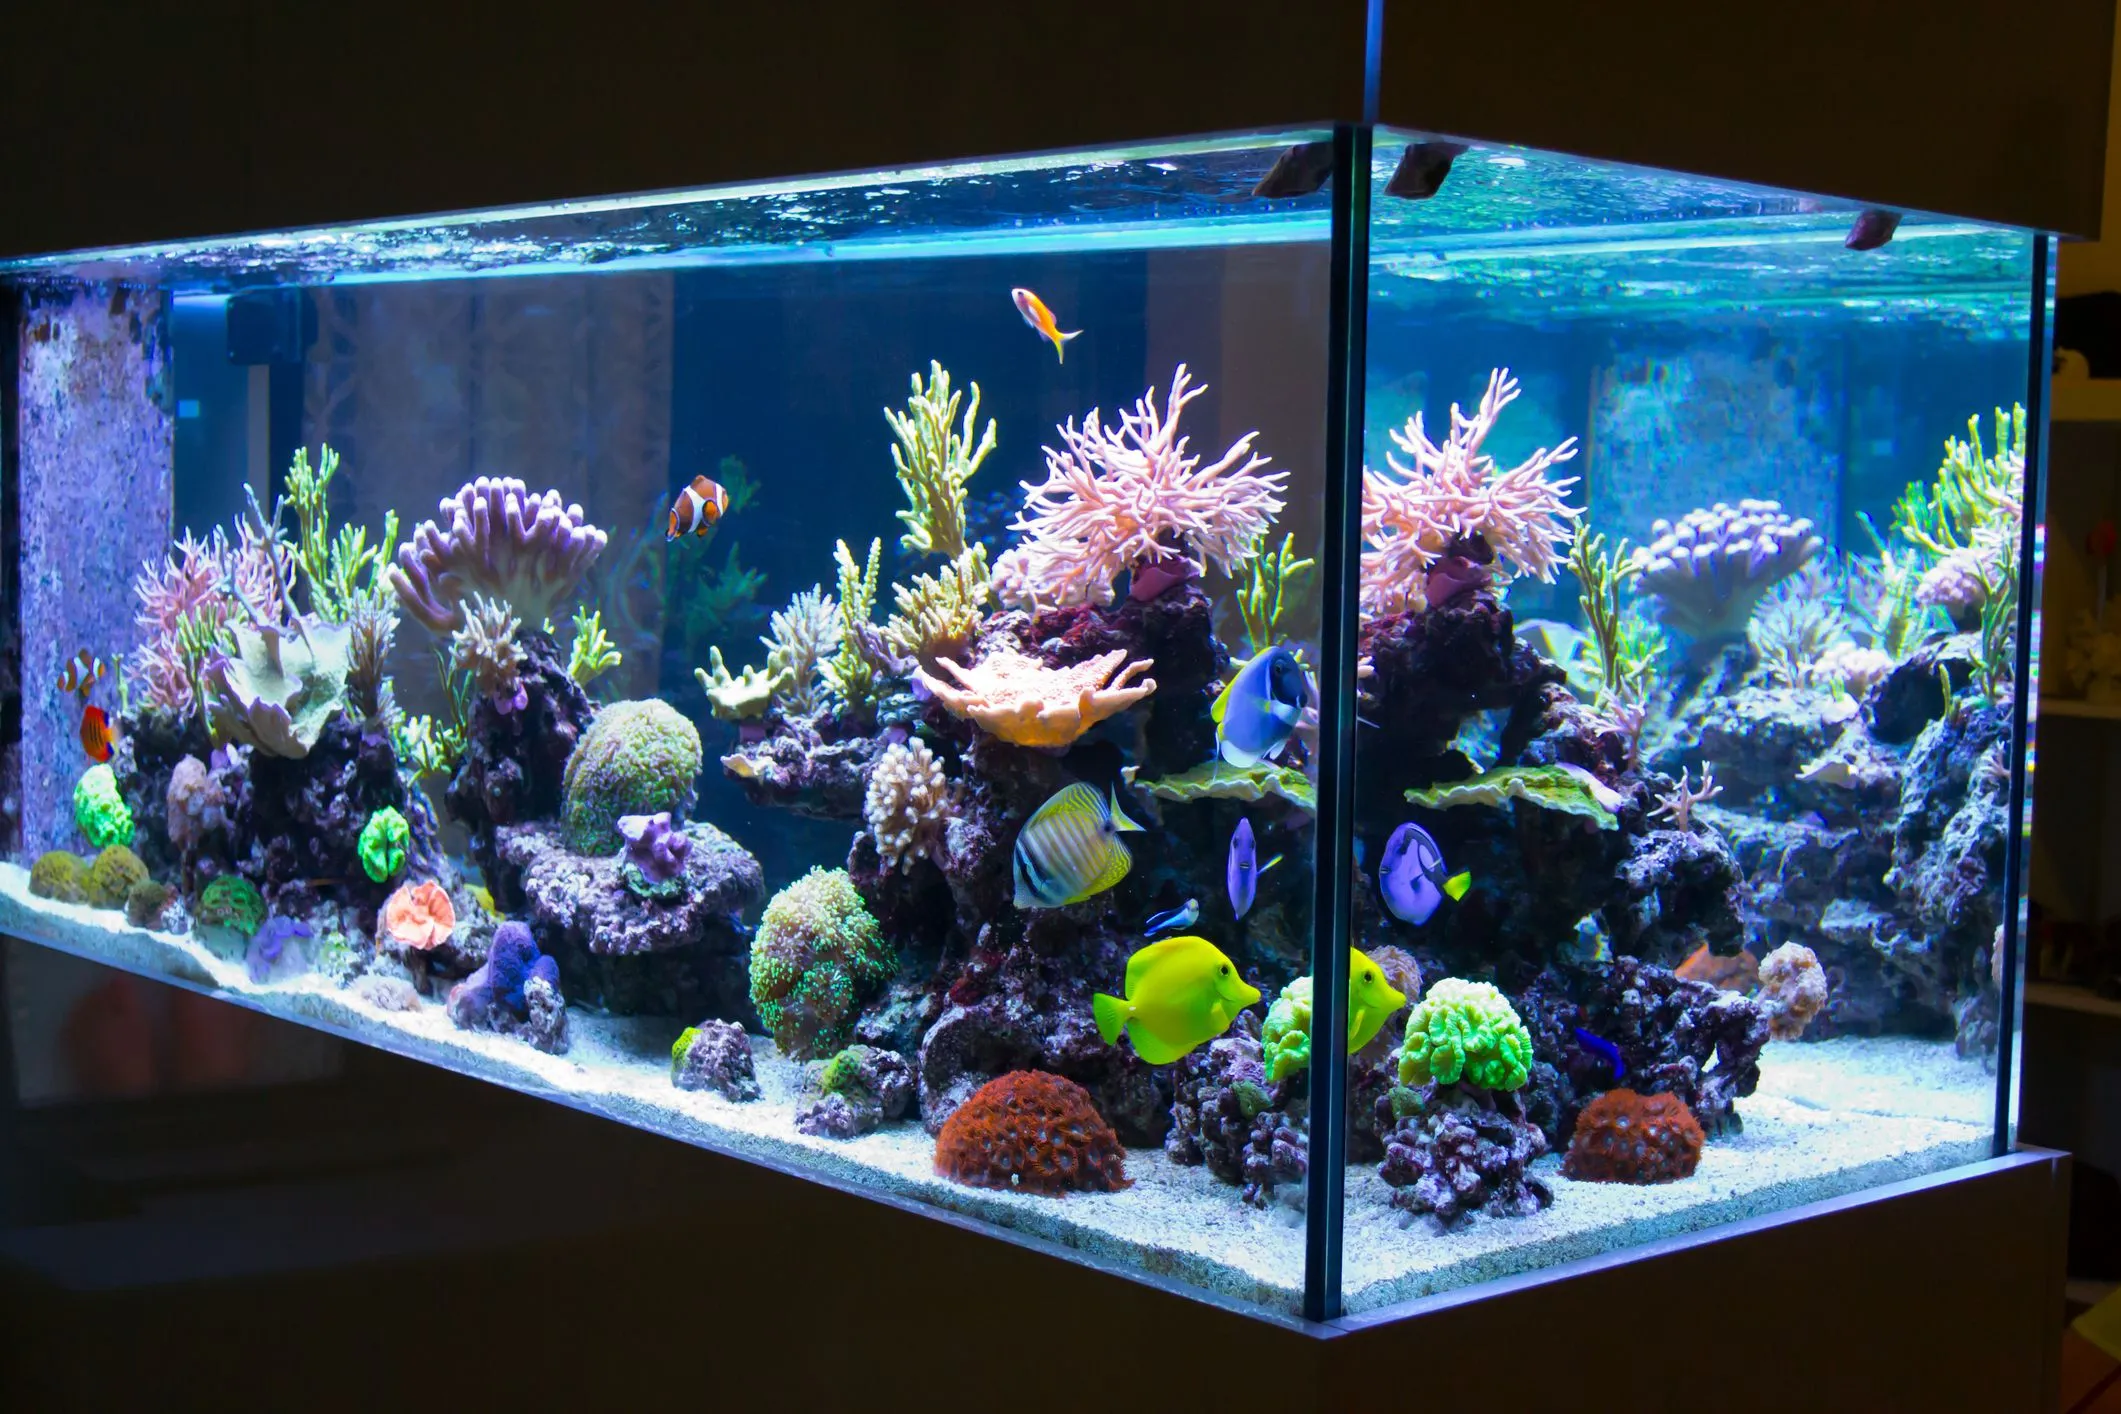 How Long Should I Leave My Aquarium Light On